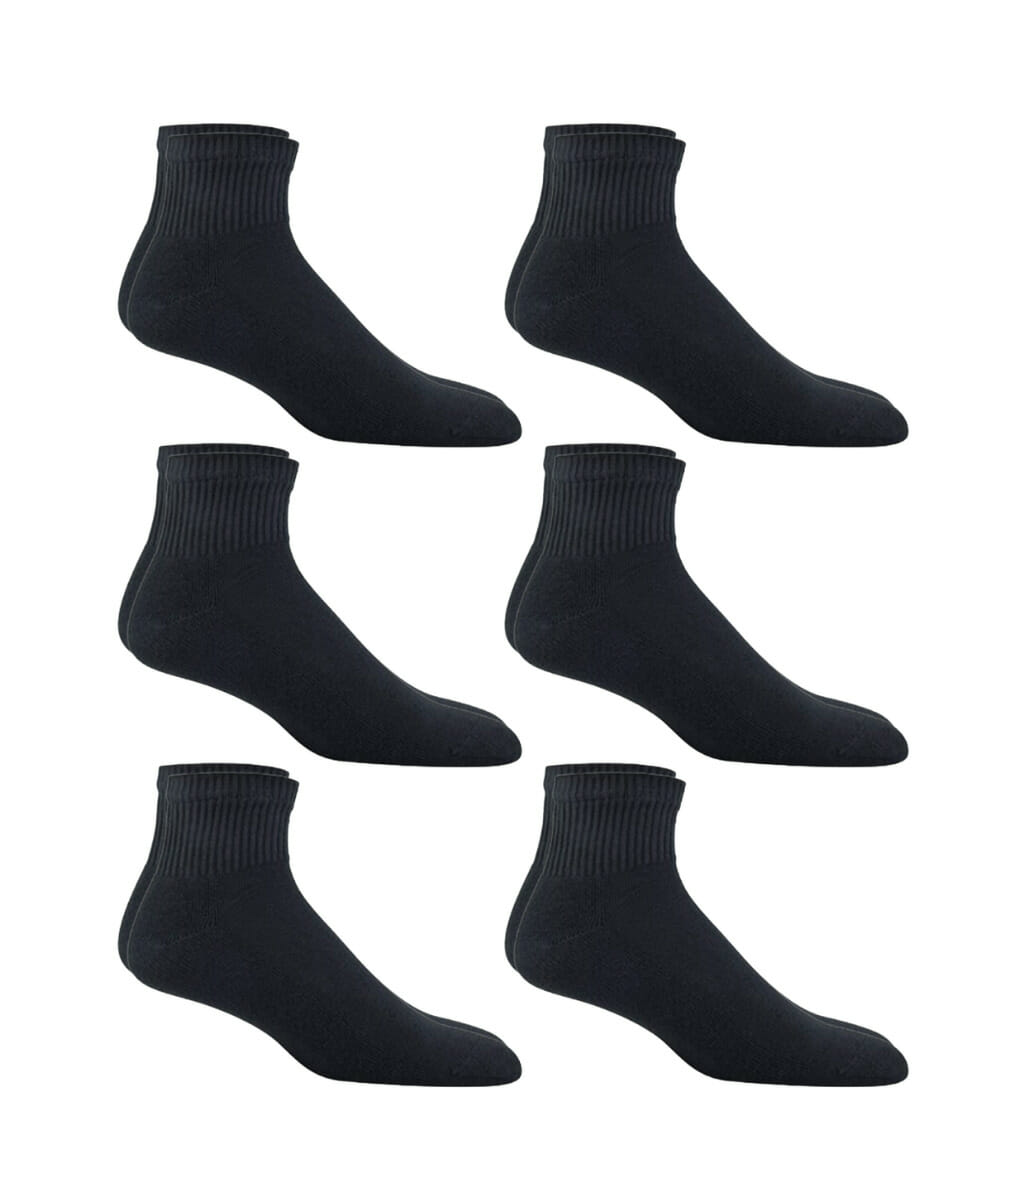 Πακέτο ανδρικές ημίκοντες κάλτσες σε μαύρο χρώμα 6 ζεύγη